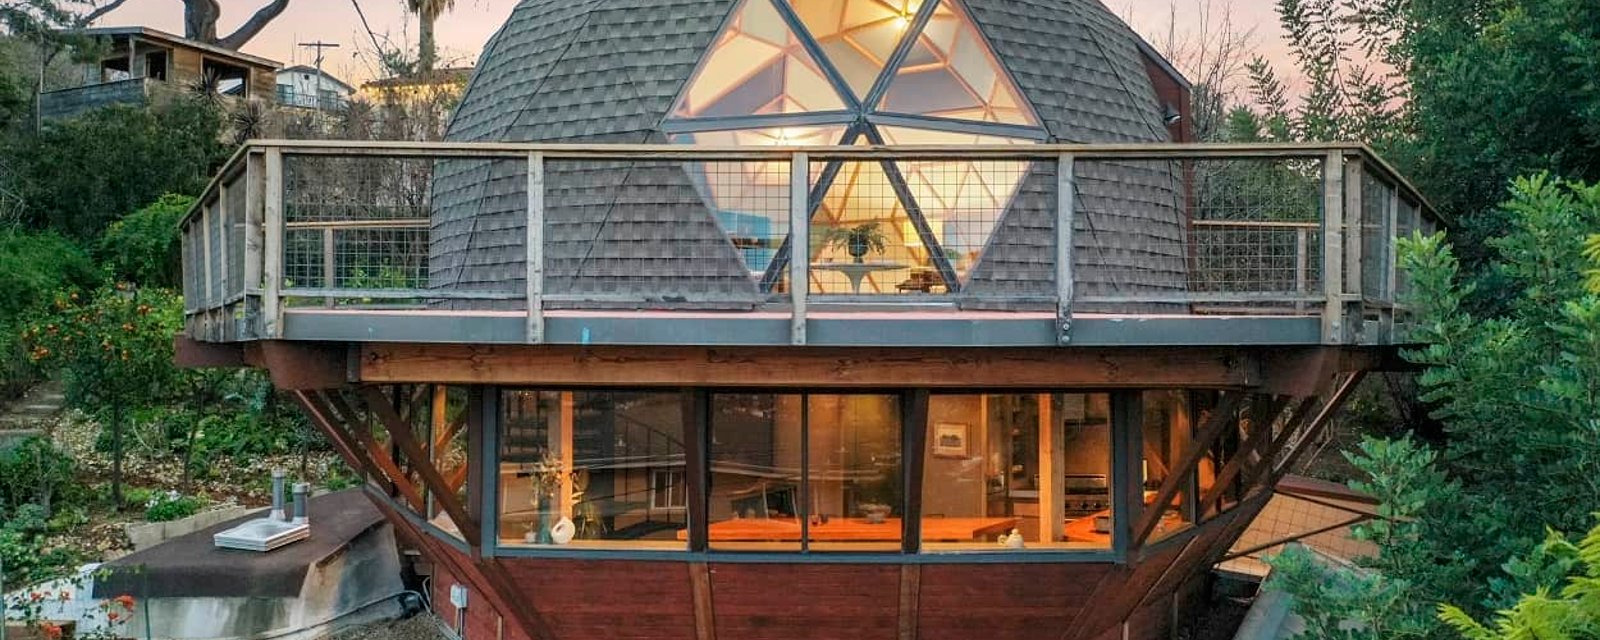 Cette maison géométrique à l'architecture unique offre un intérieur surprenant